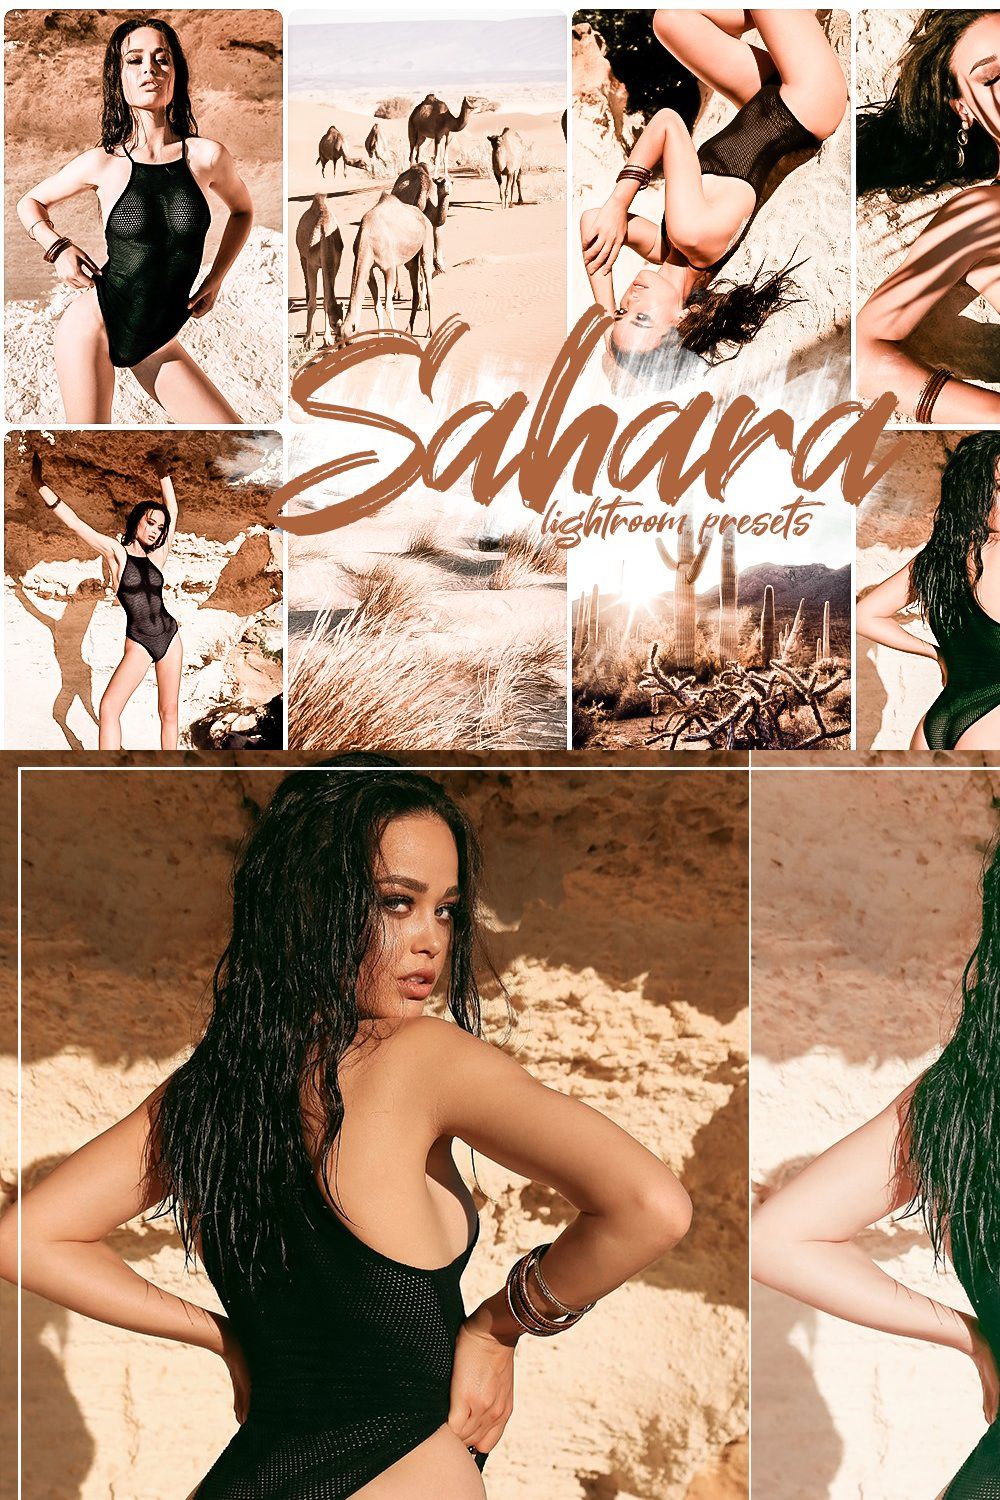 Sahara Lightroom presets pinterest preview image.